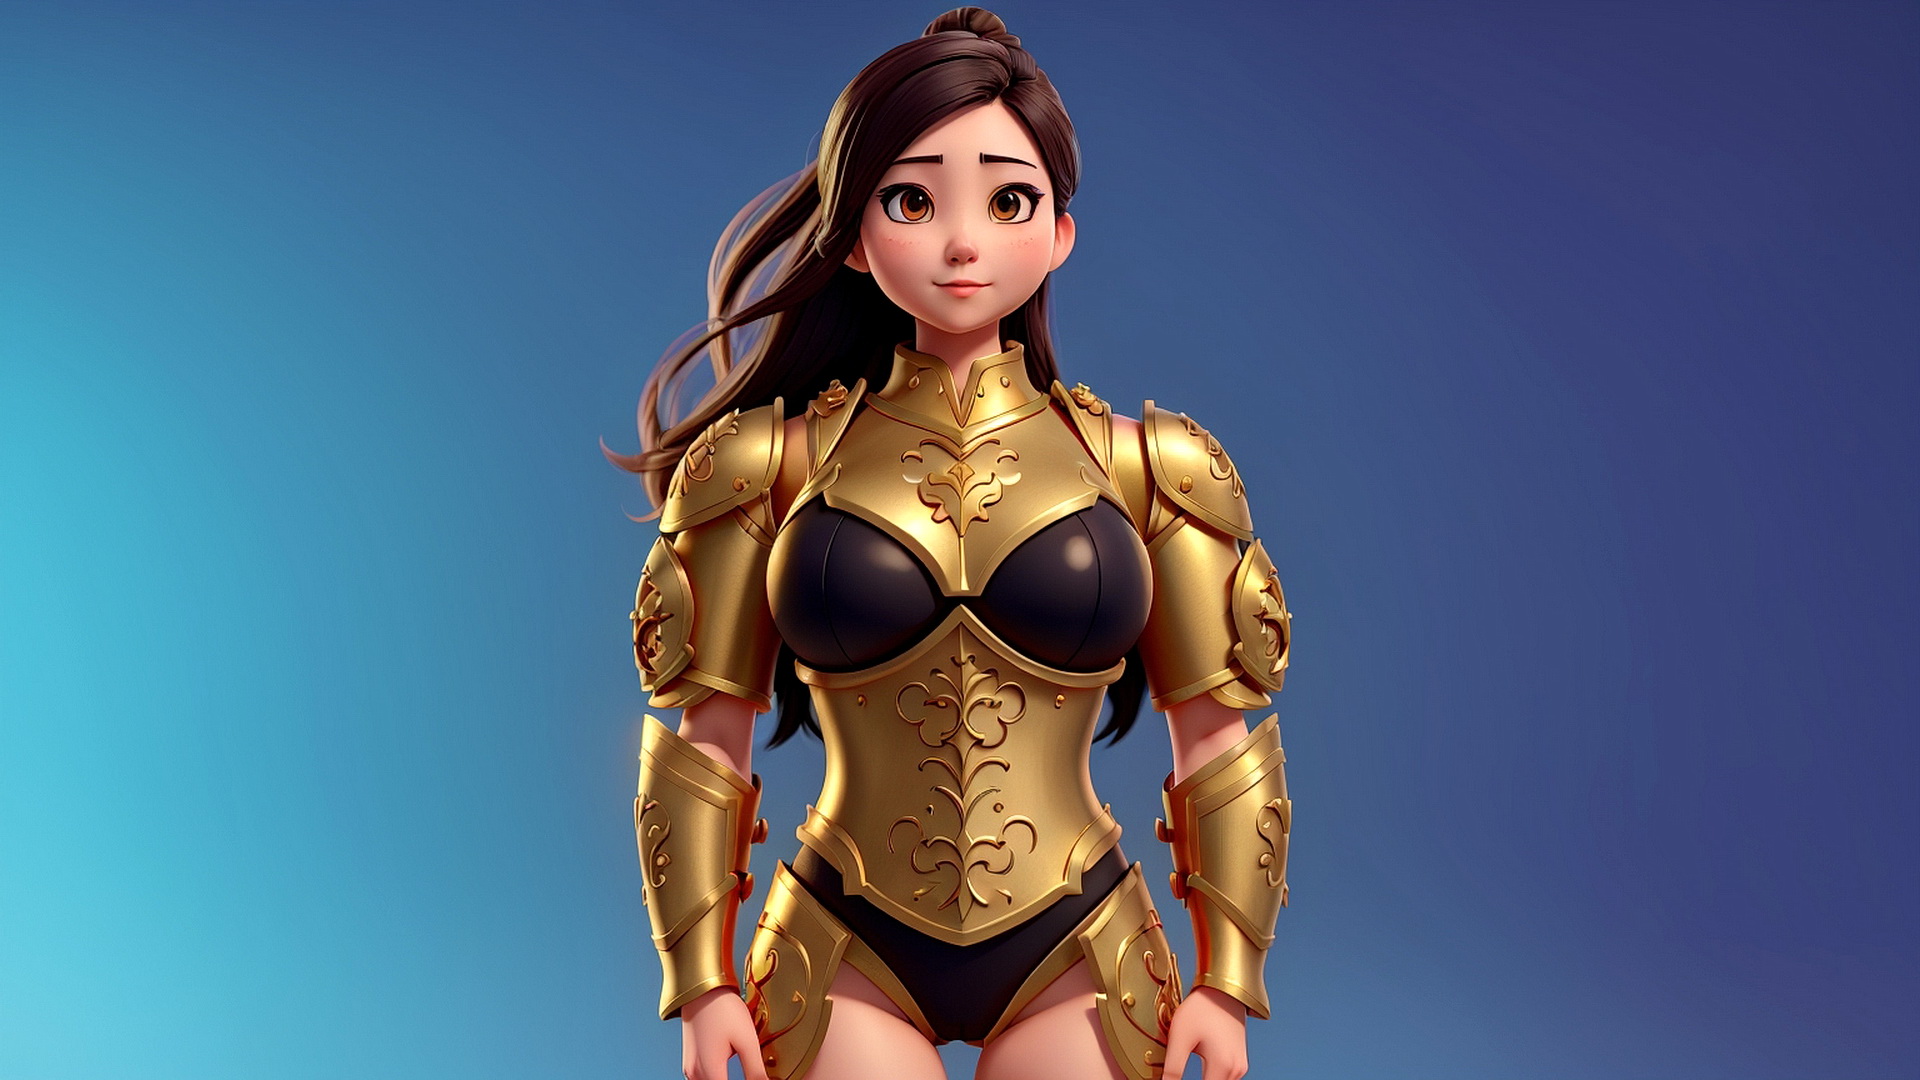 Girl warrior standing in golden armor on blue background